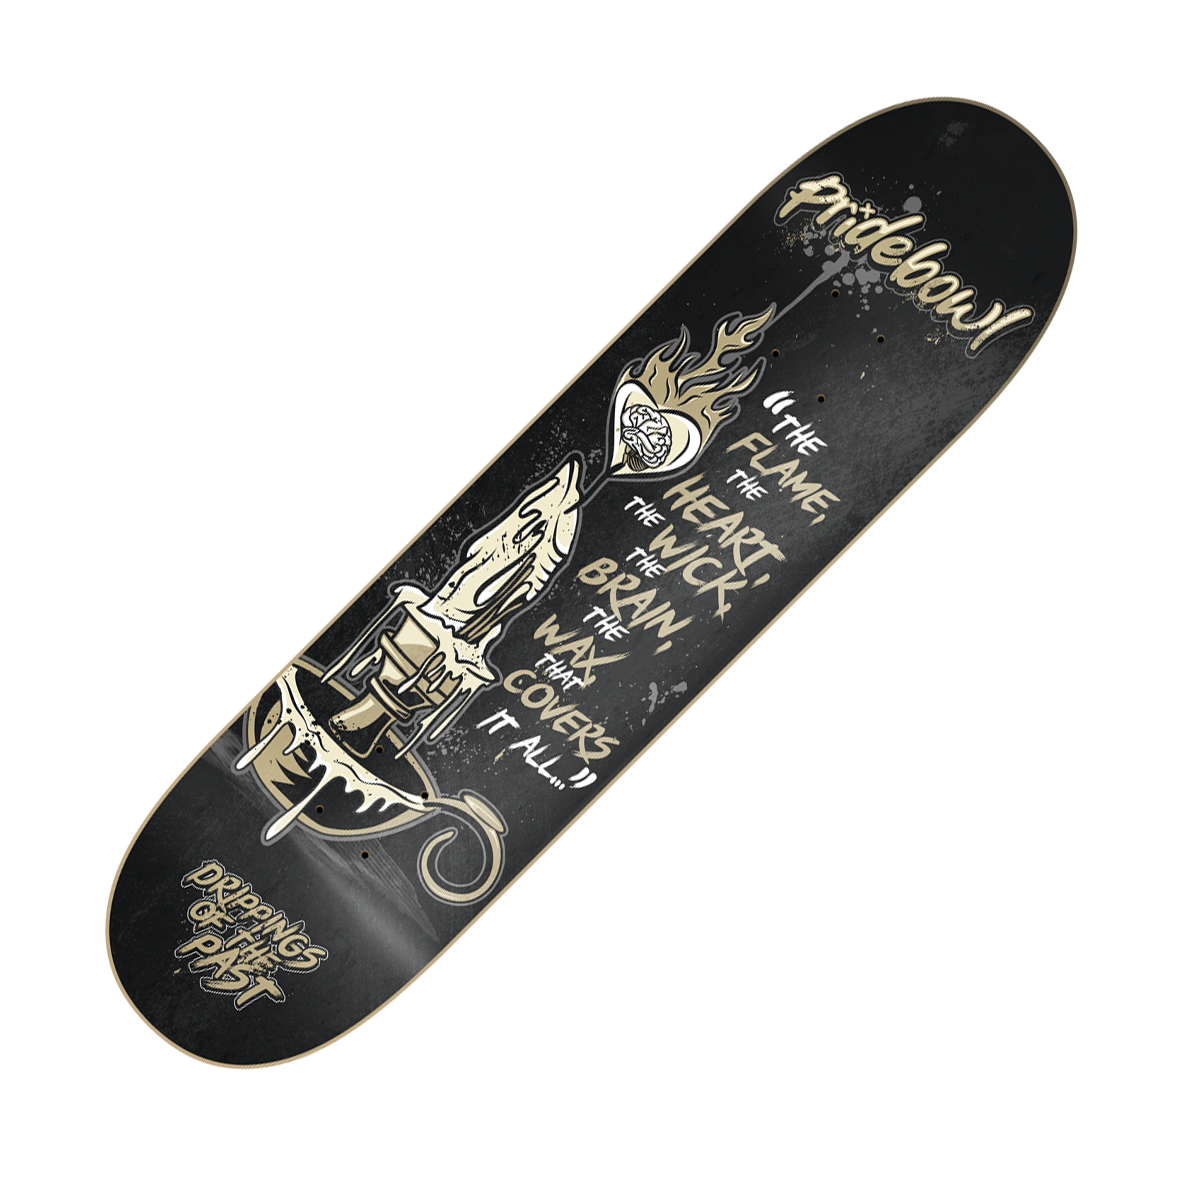 PRIDEBOWL - "Drippings" (Skateboard Deck)